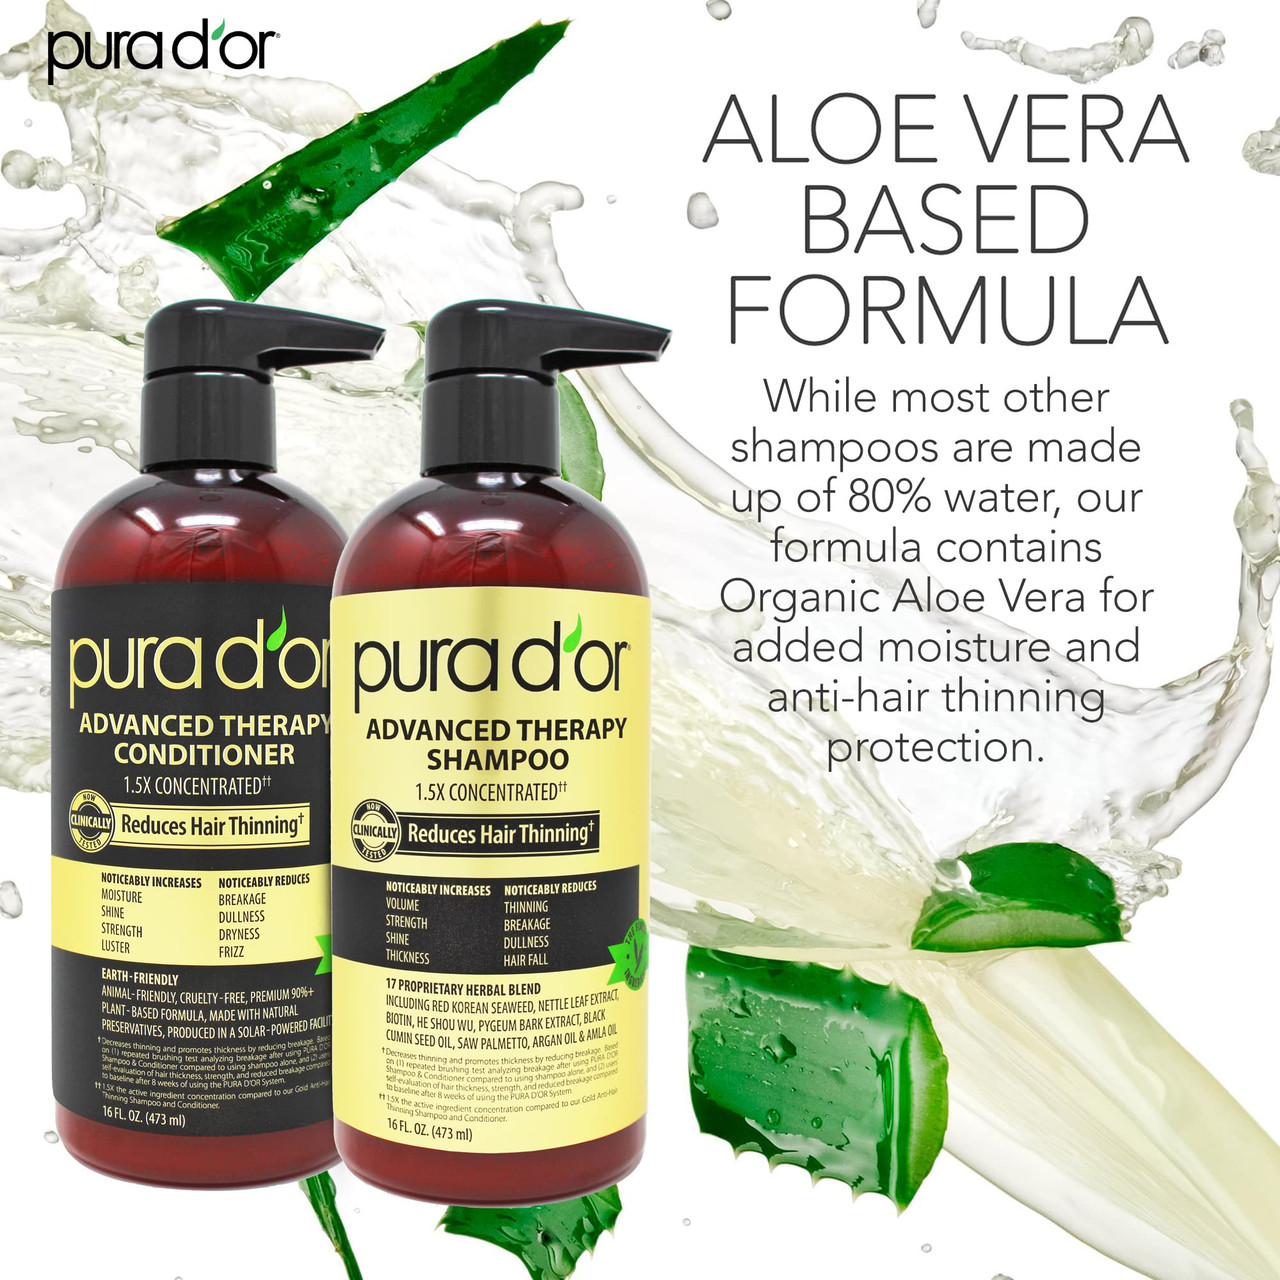 Pura D'or Advanced Therapy Shampoo & Conditioner